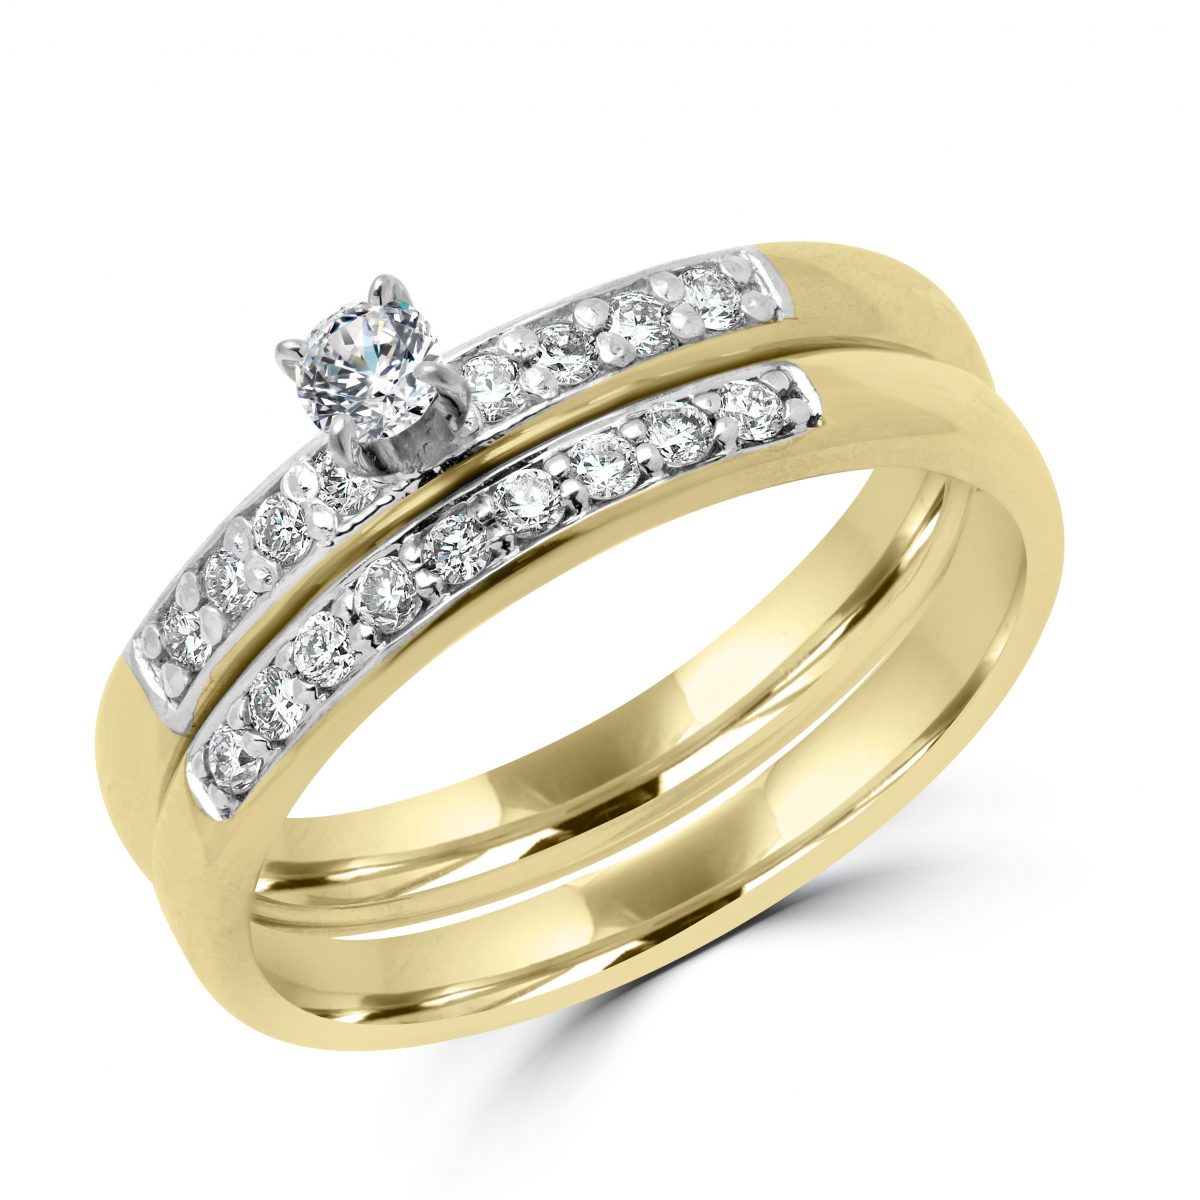 Eye-catching bridal engagement ring set in 10k yellow gold